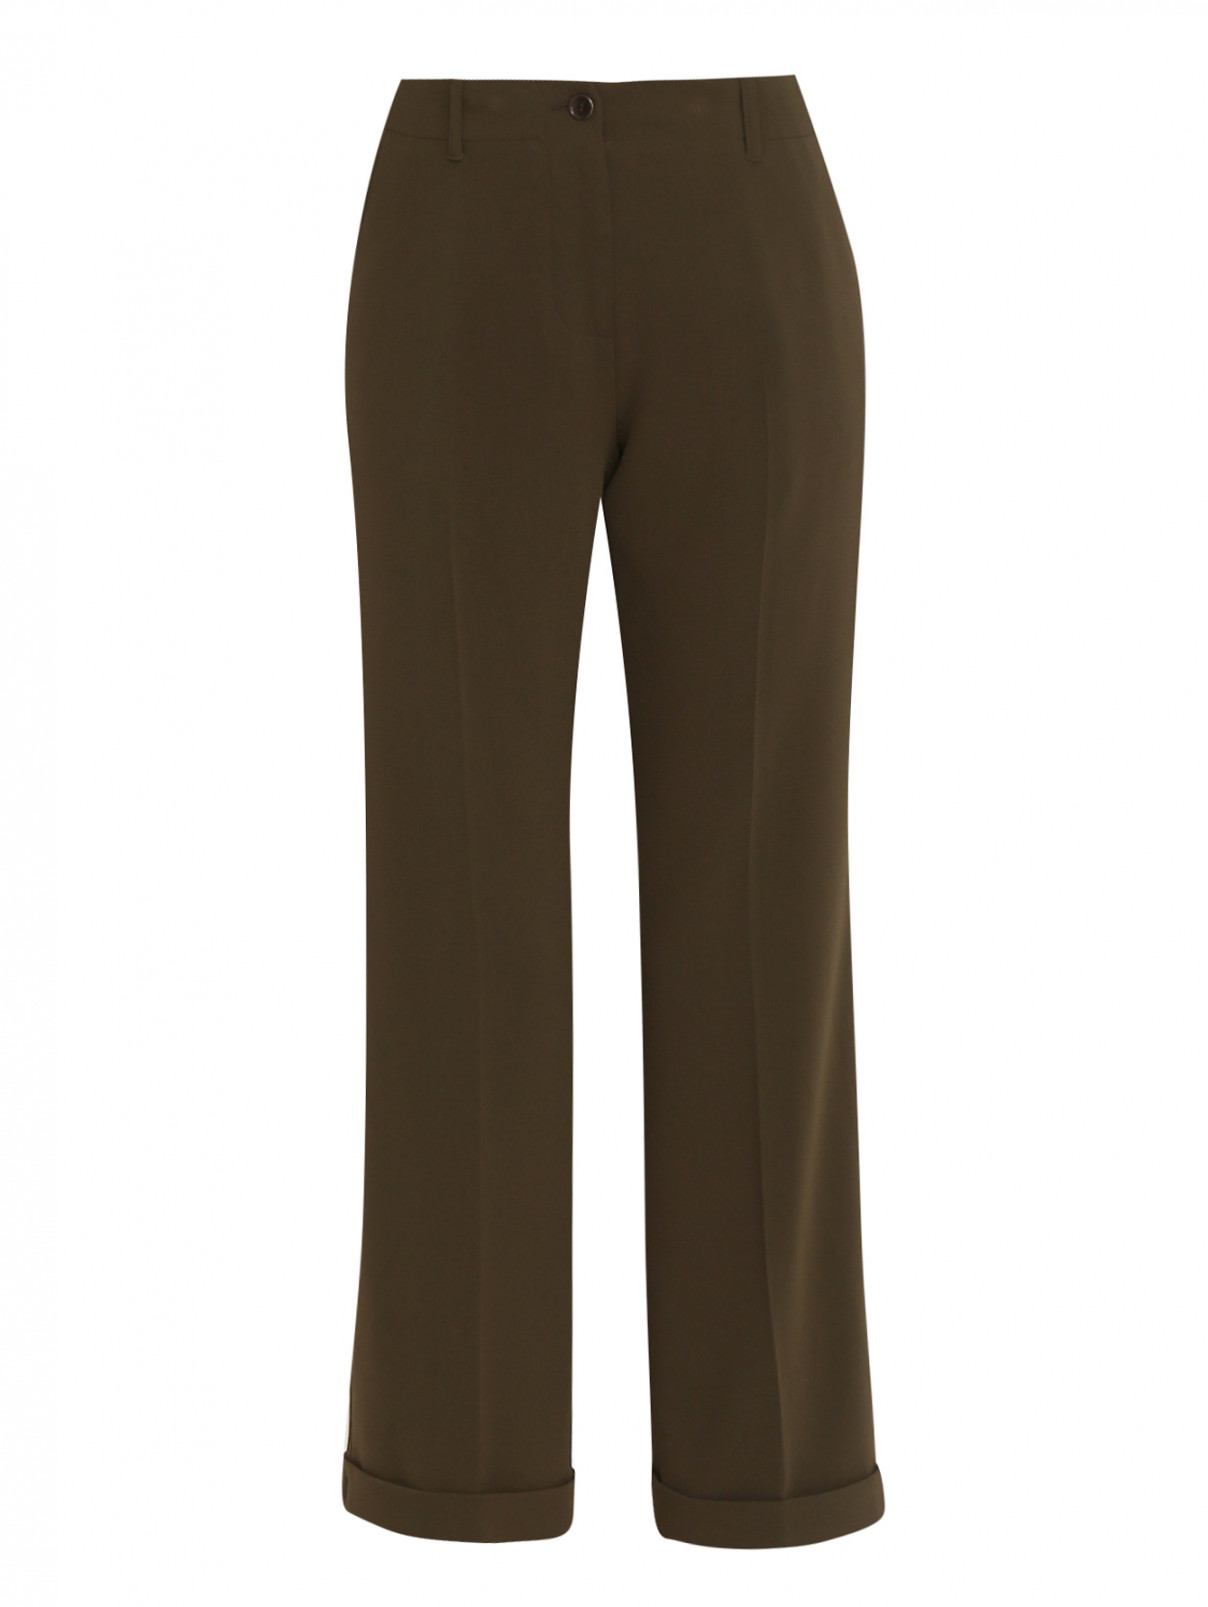 Прямые брюки со стрелками и отворотами Aspesi  –  Общий вид  – Цвет:  Зеленый